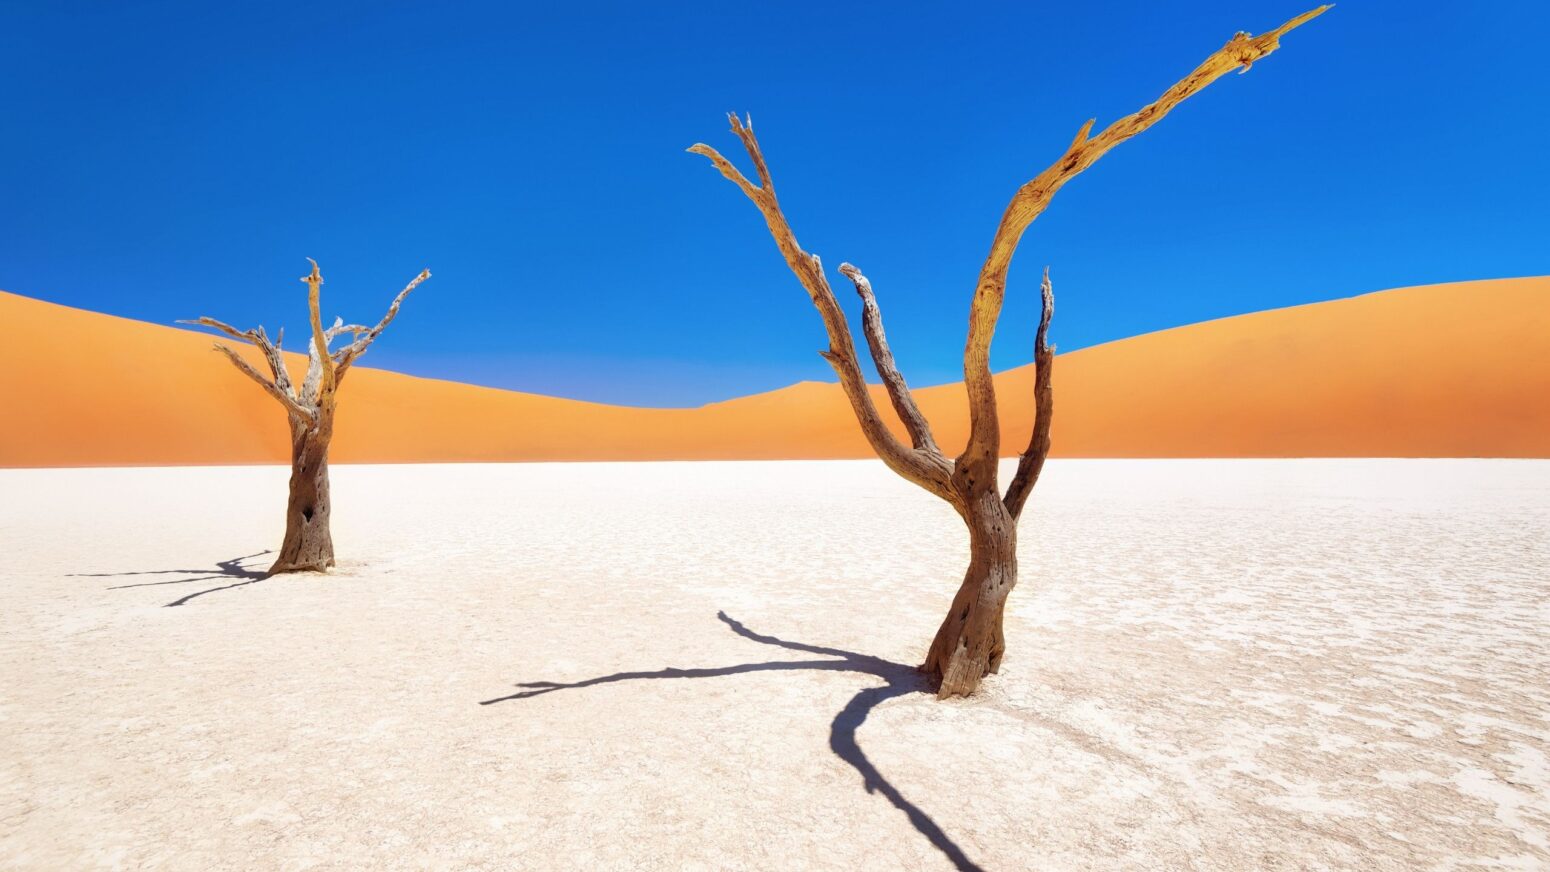 Trees in Namibia desert